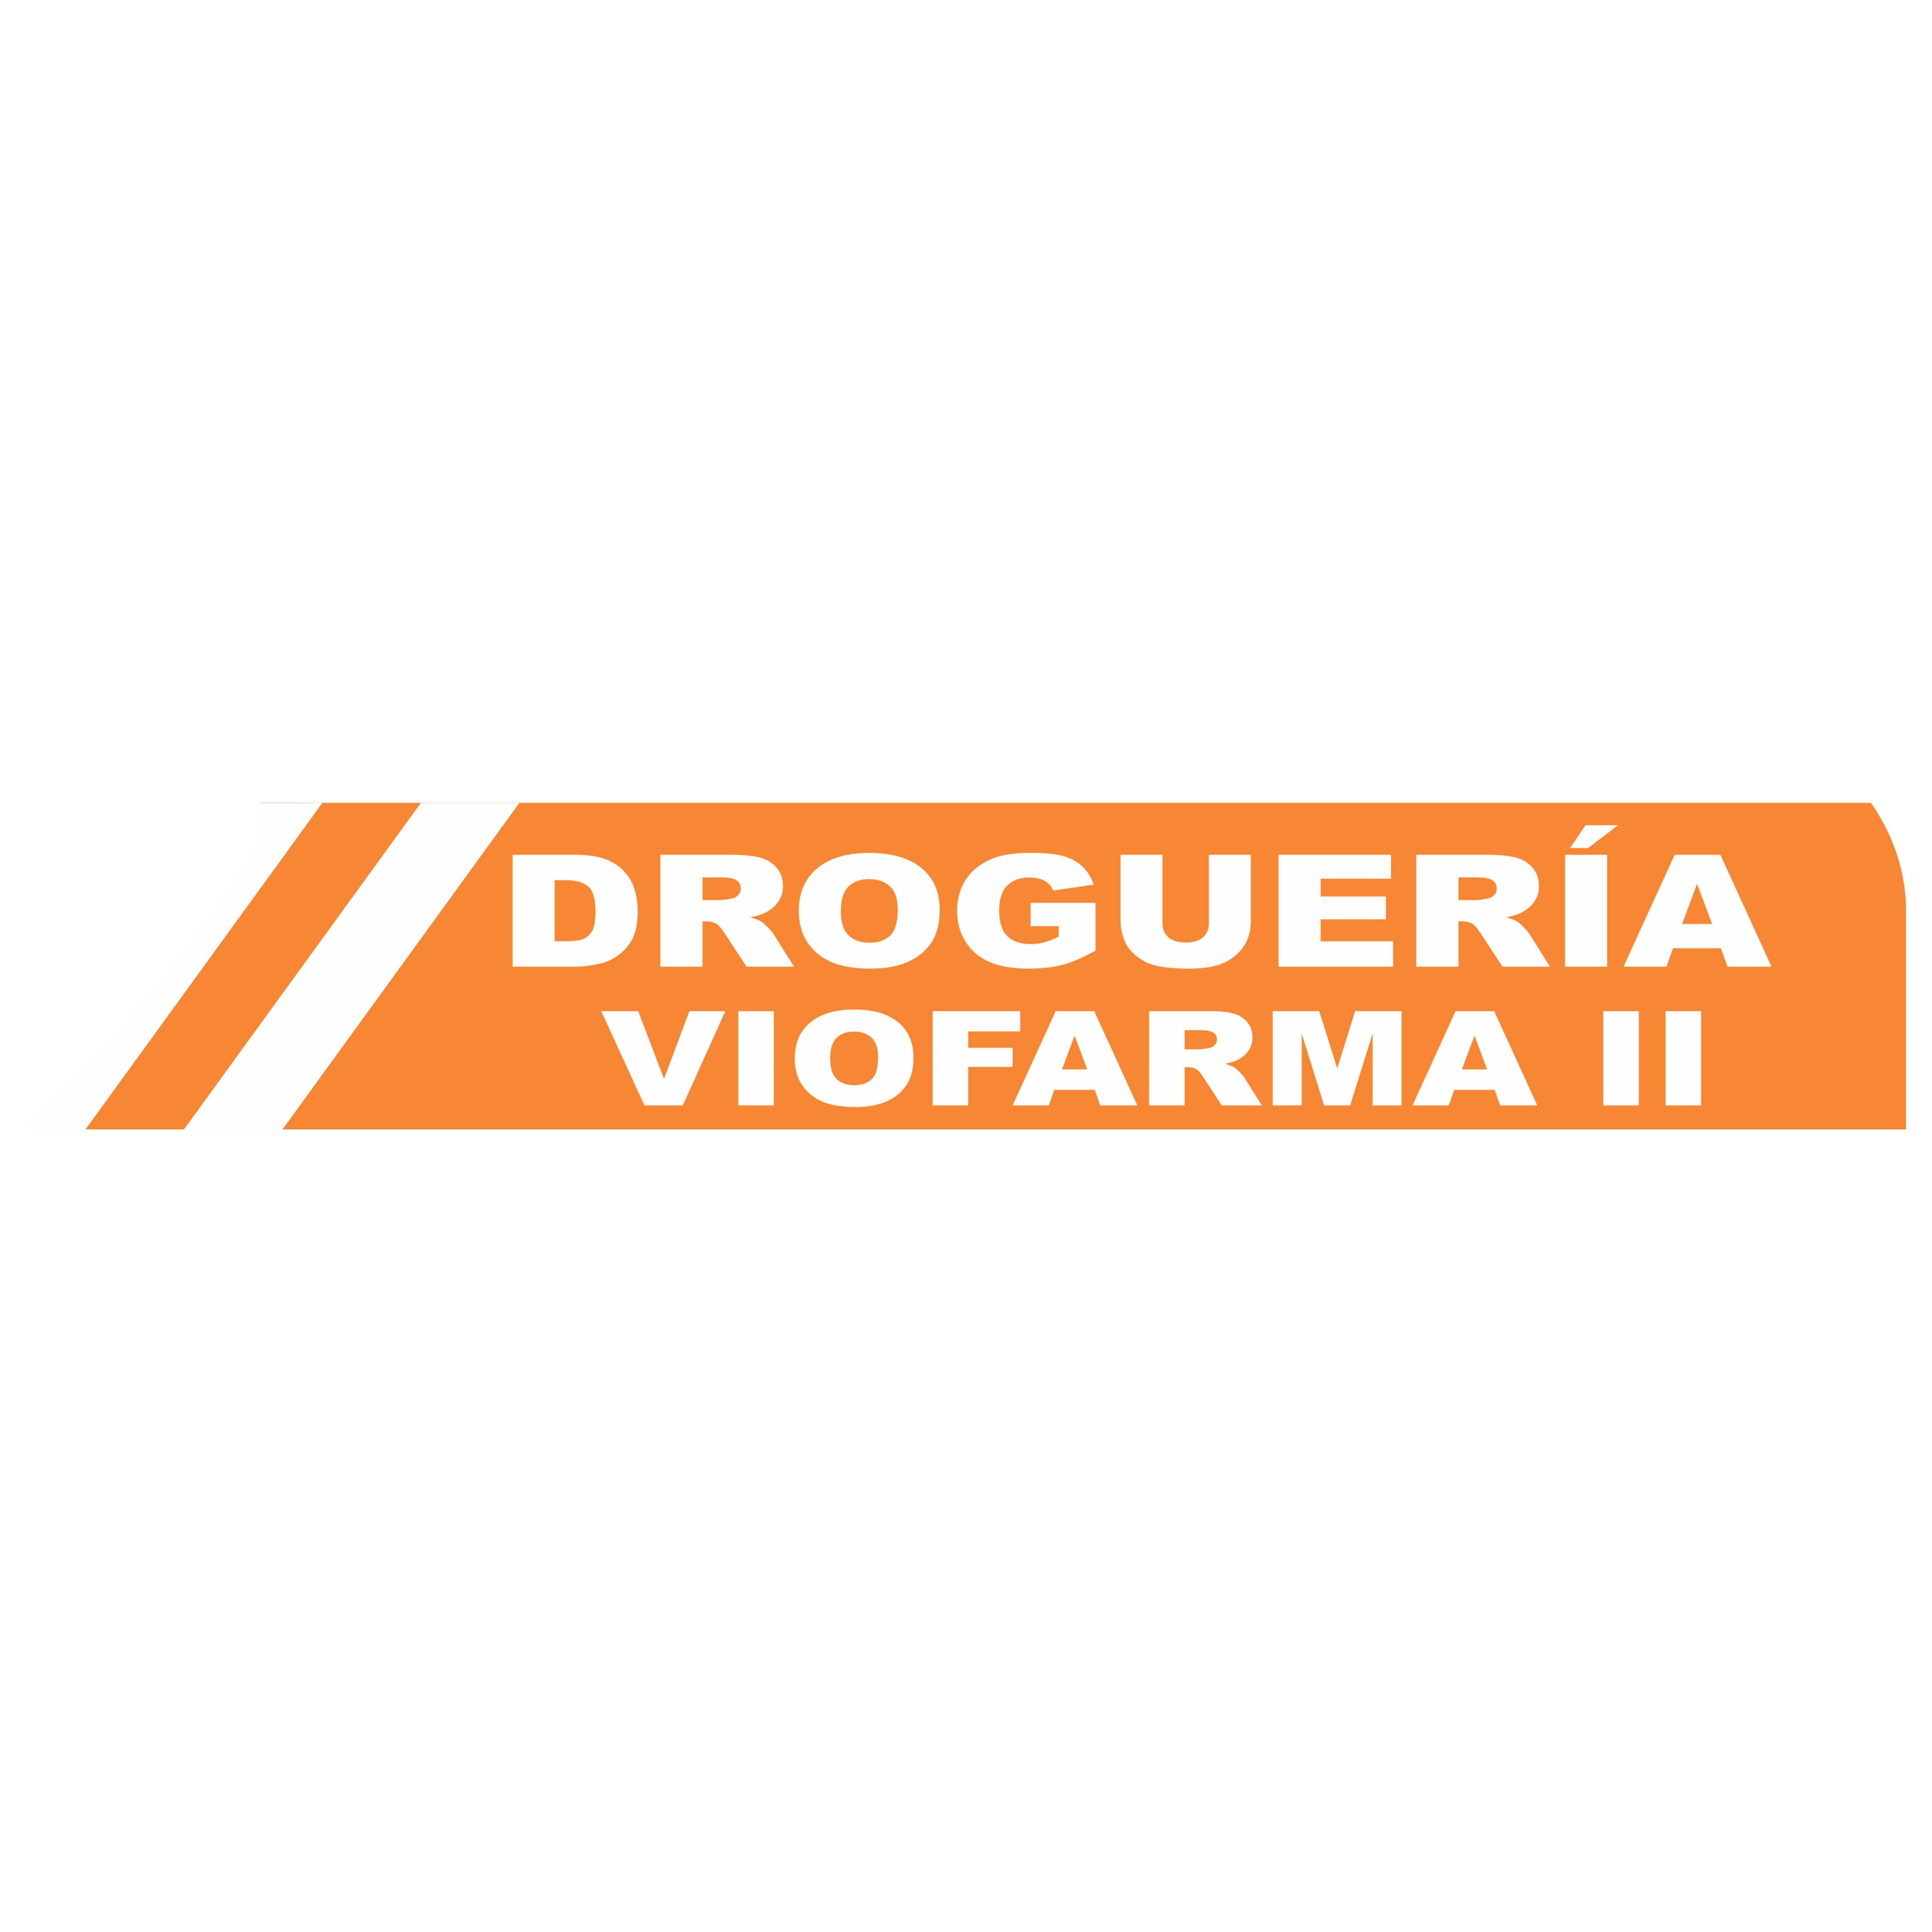 Droguería Viofarma II